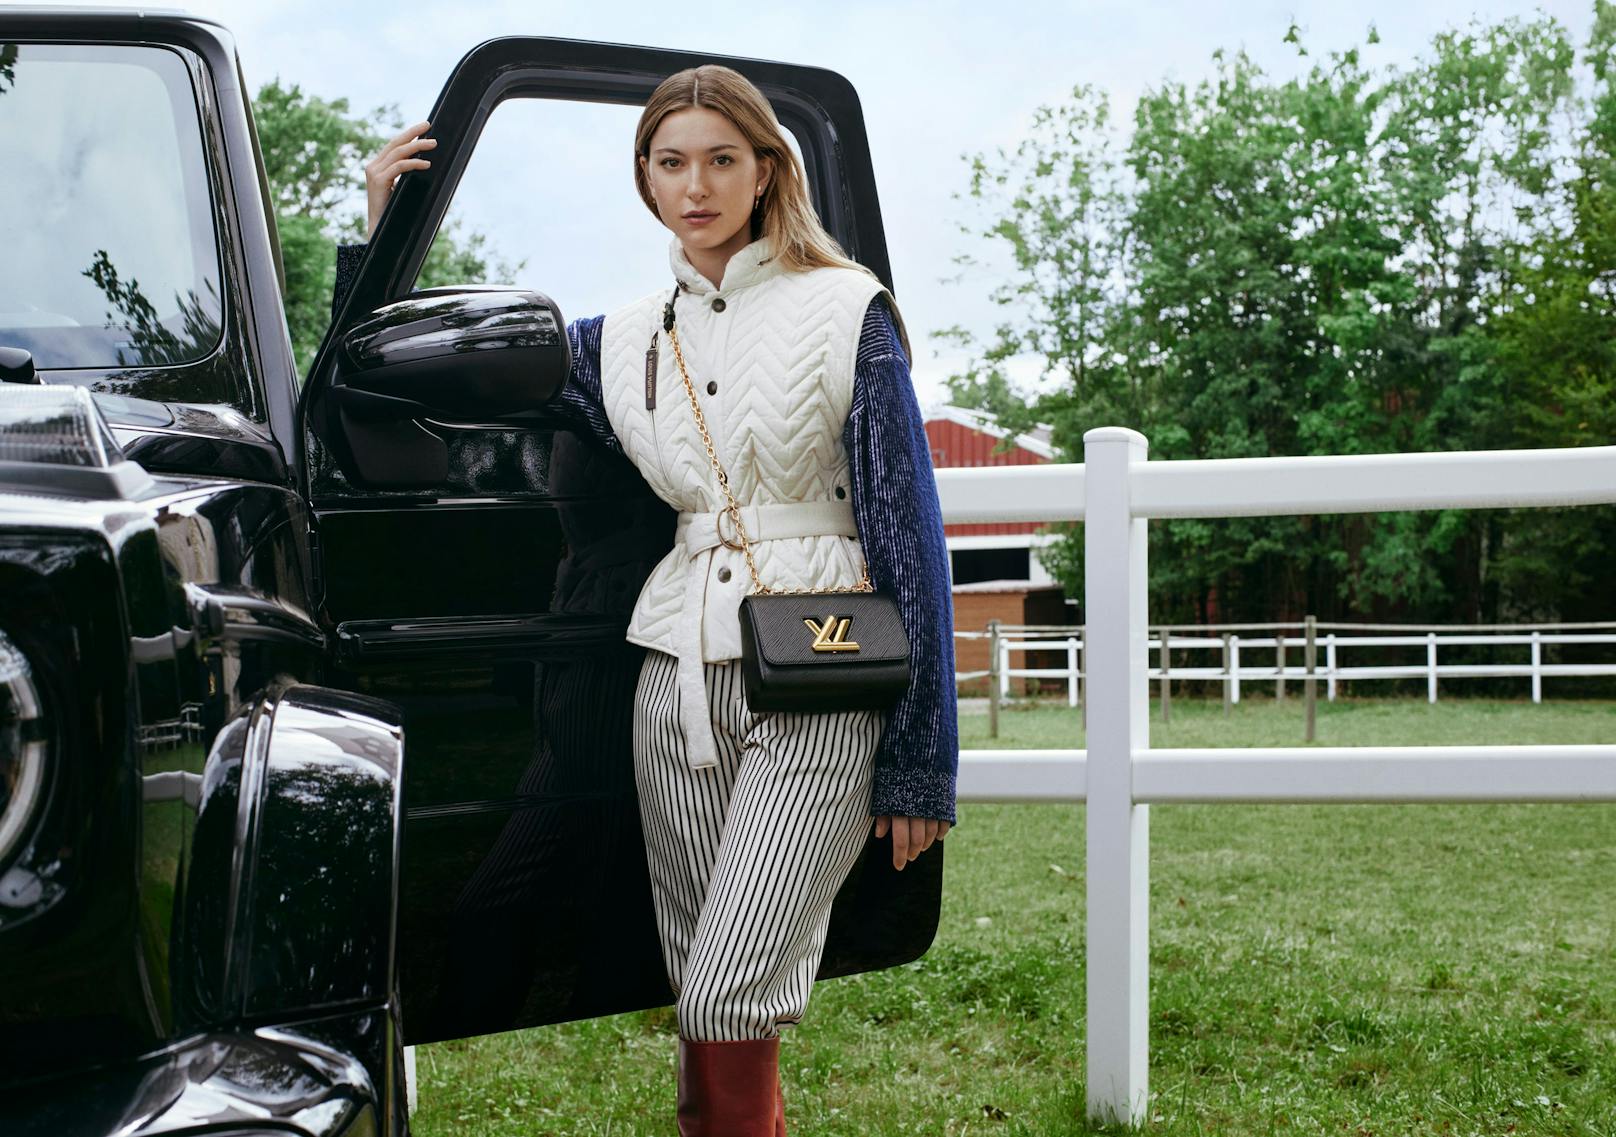 Eve Jobs ist begeisterte Reiterin. Louis Vuitton fotografierte das junge Model deswegen auch gleich hoch zu Ross und im Reitstall. Trés chic!